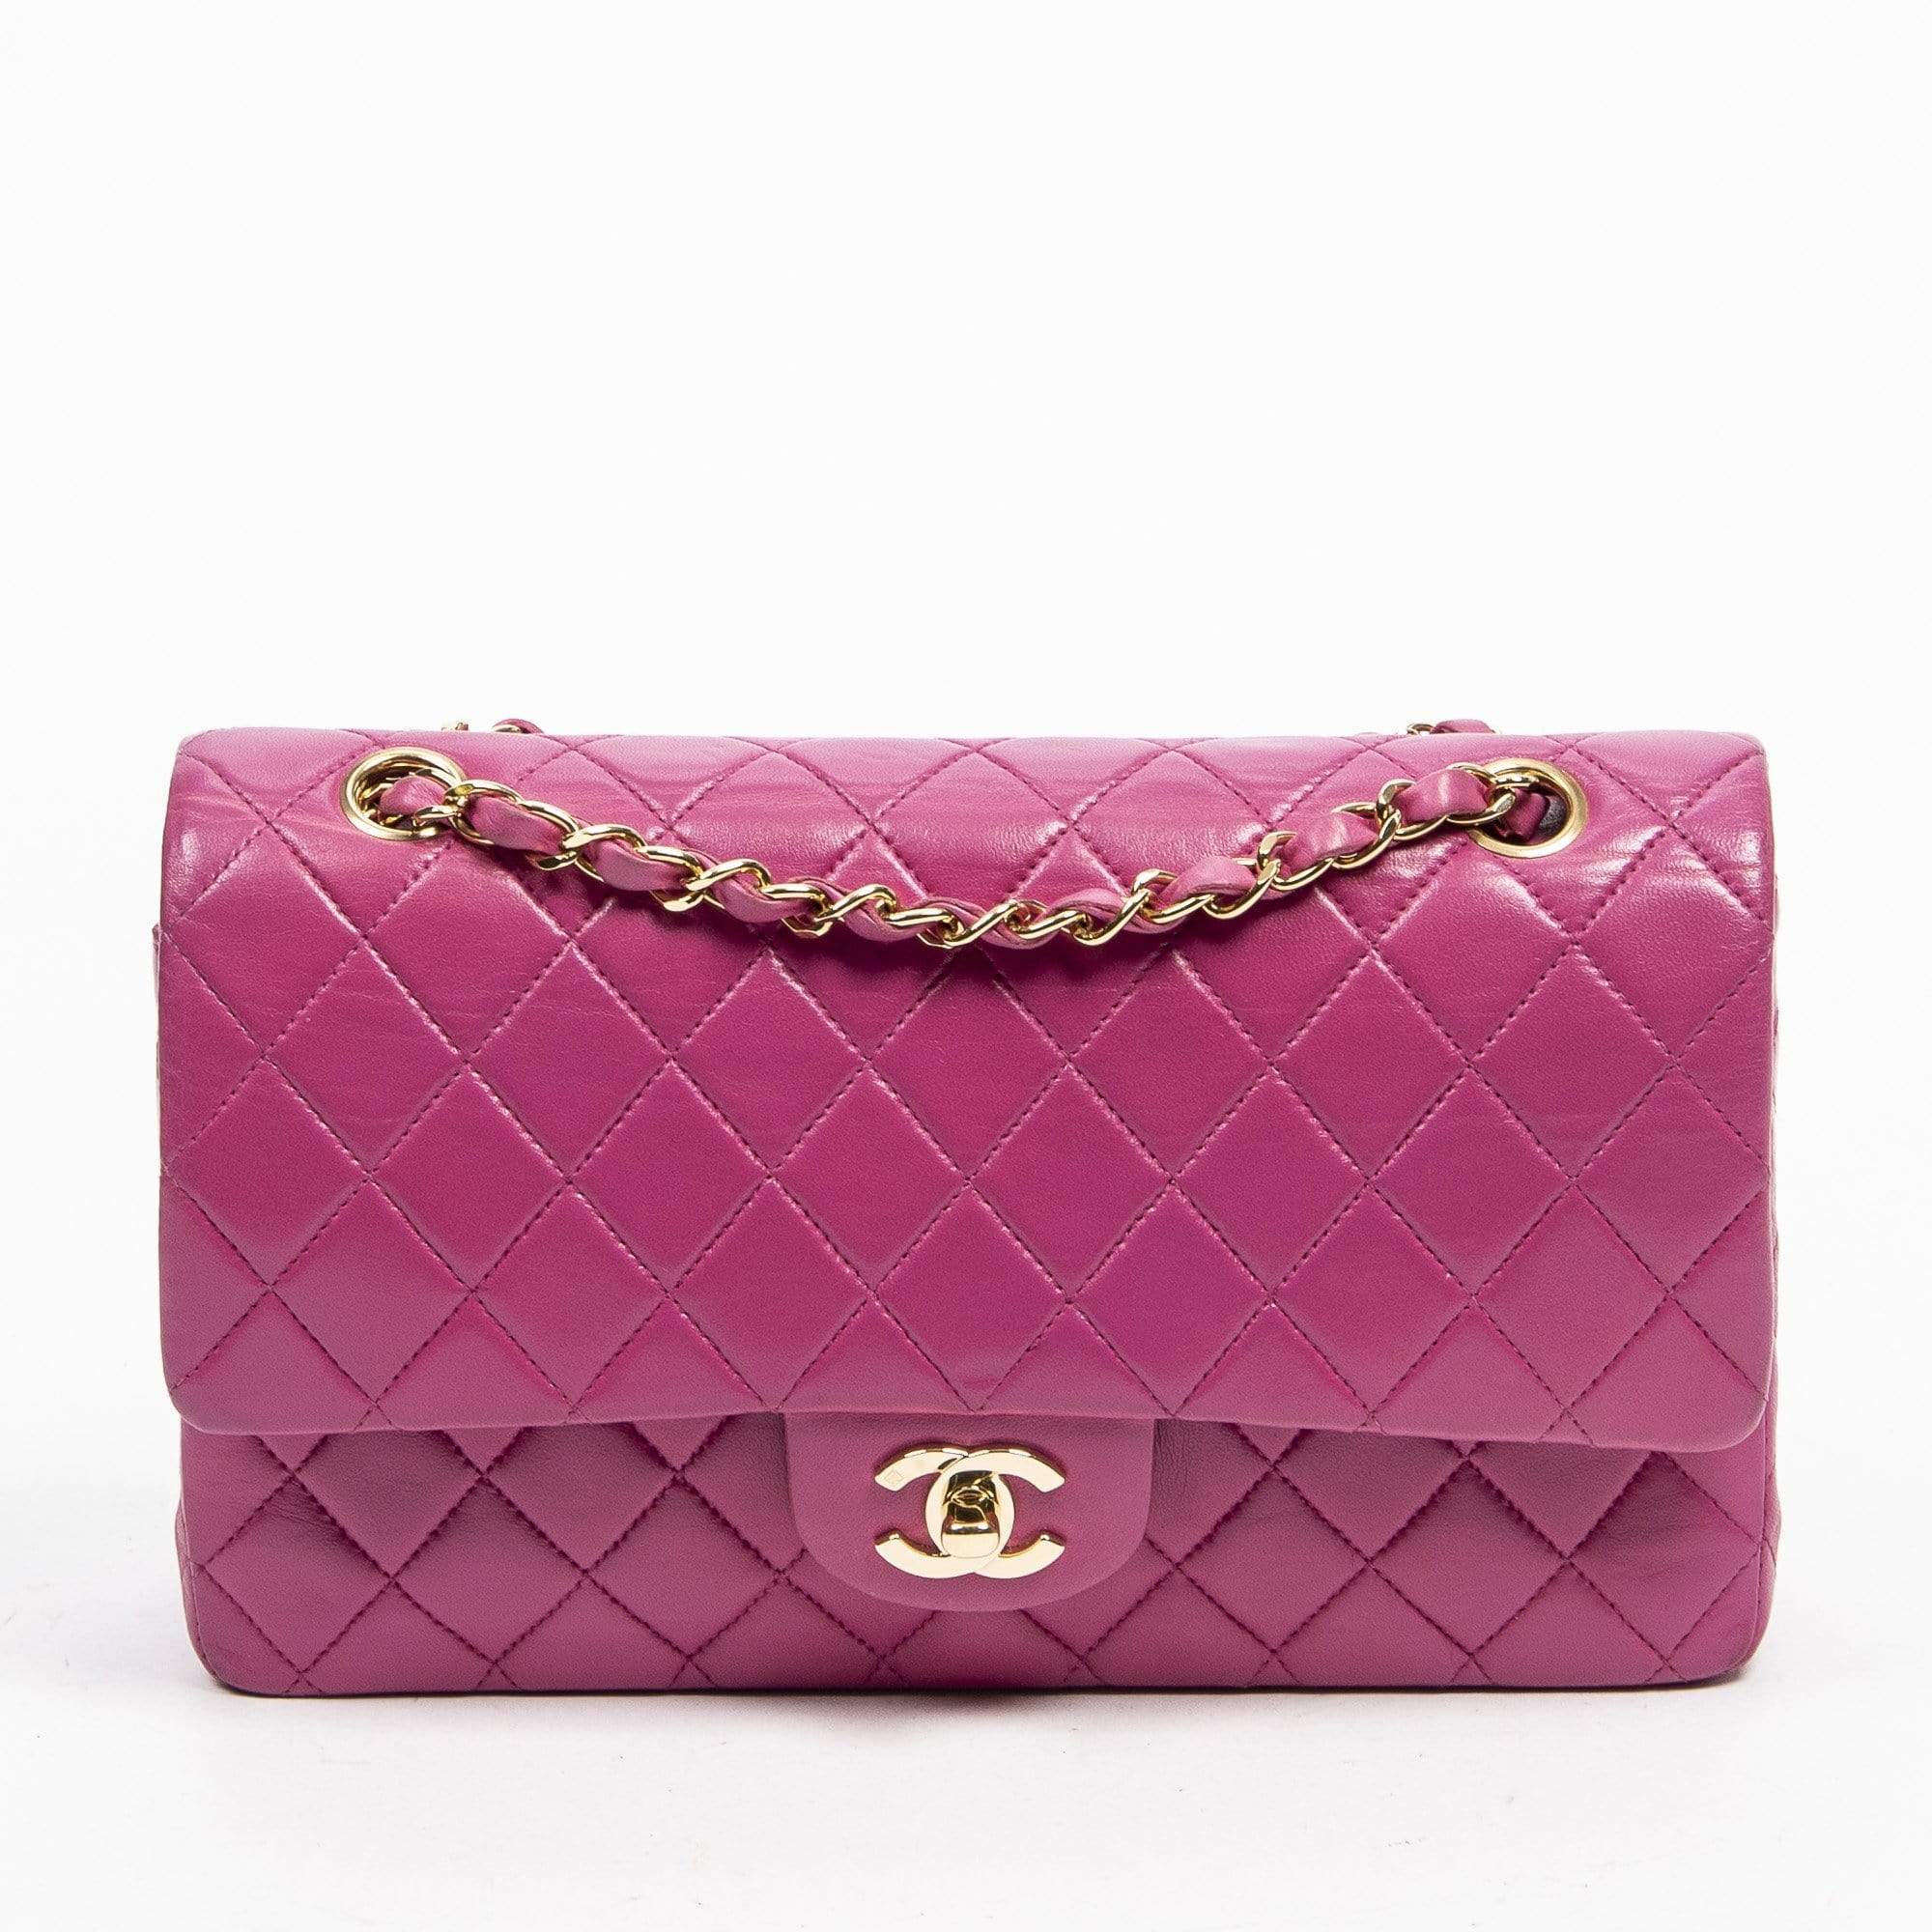 Pre-owned Velvet Handbag In Pink